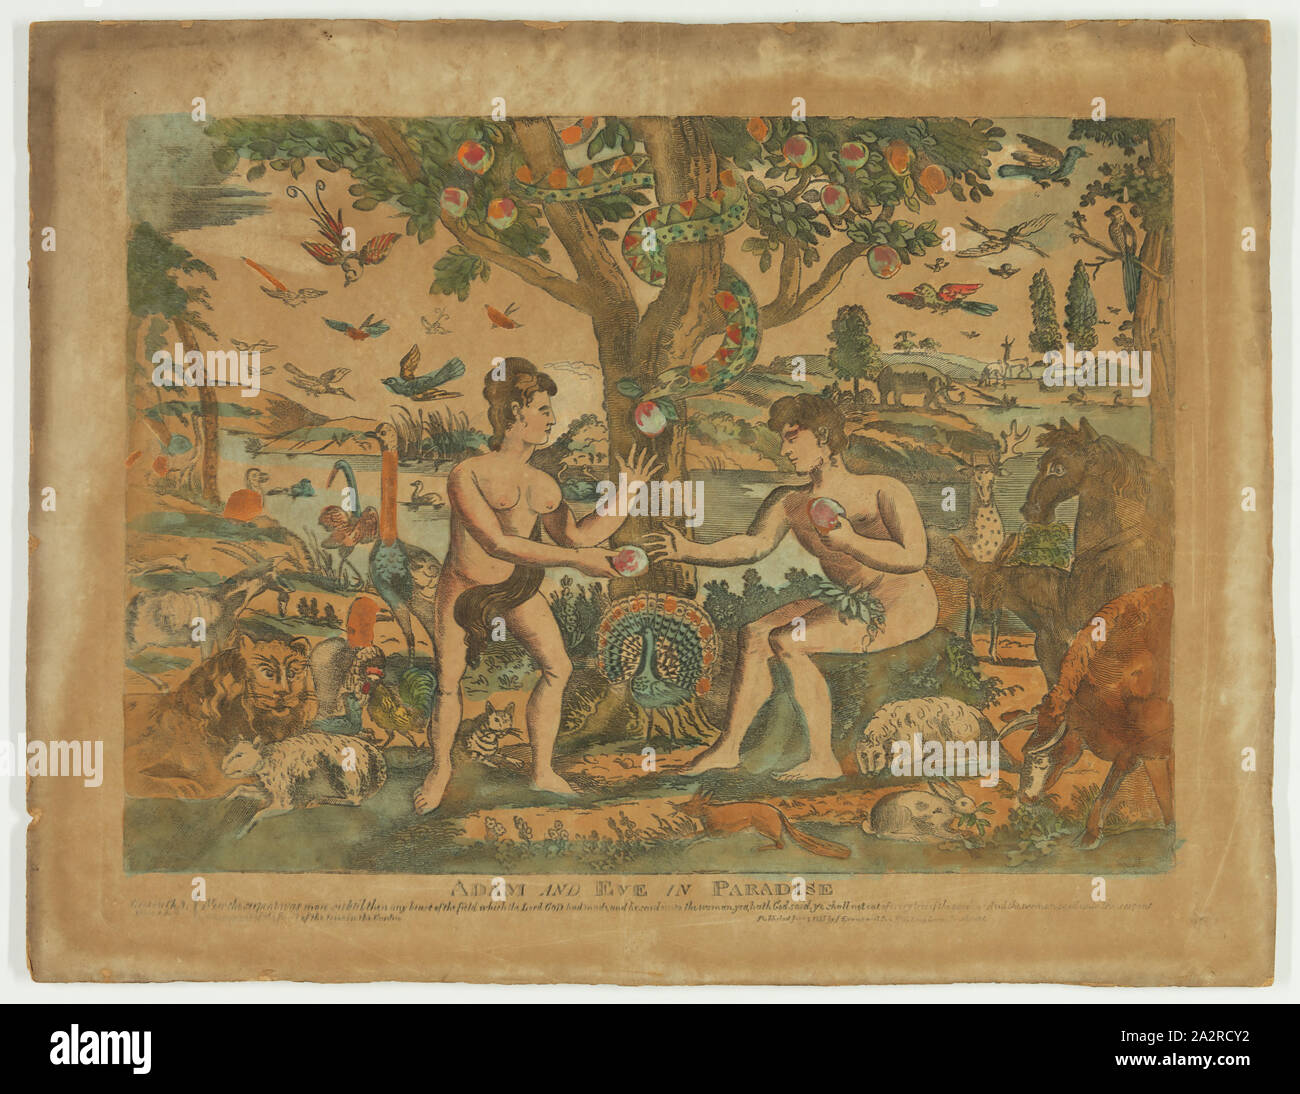 Adamo ed Eva nel Paradiso, 1815, incisione stampate in bianco e nero, colorati a mano, immagine: 13 1/8 x 18 1/8 in Foto Stock